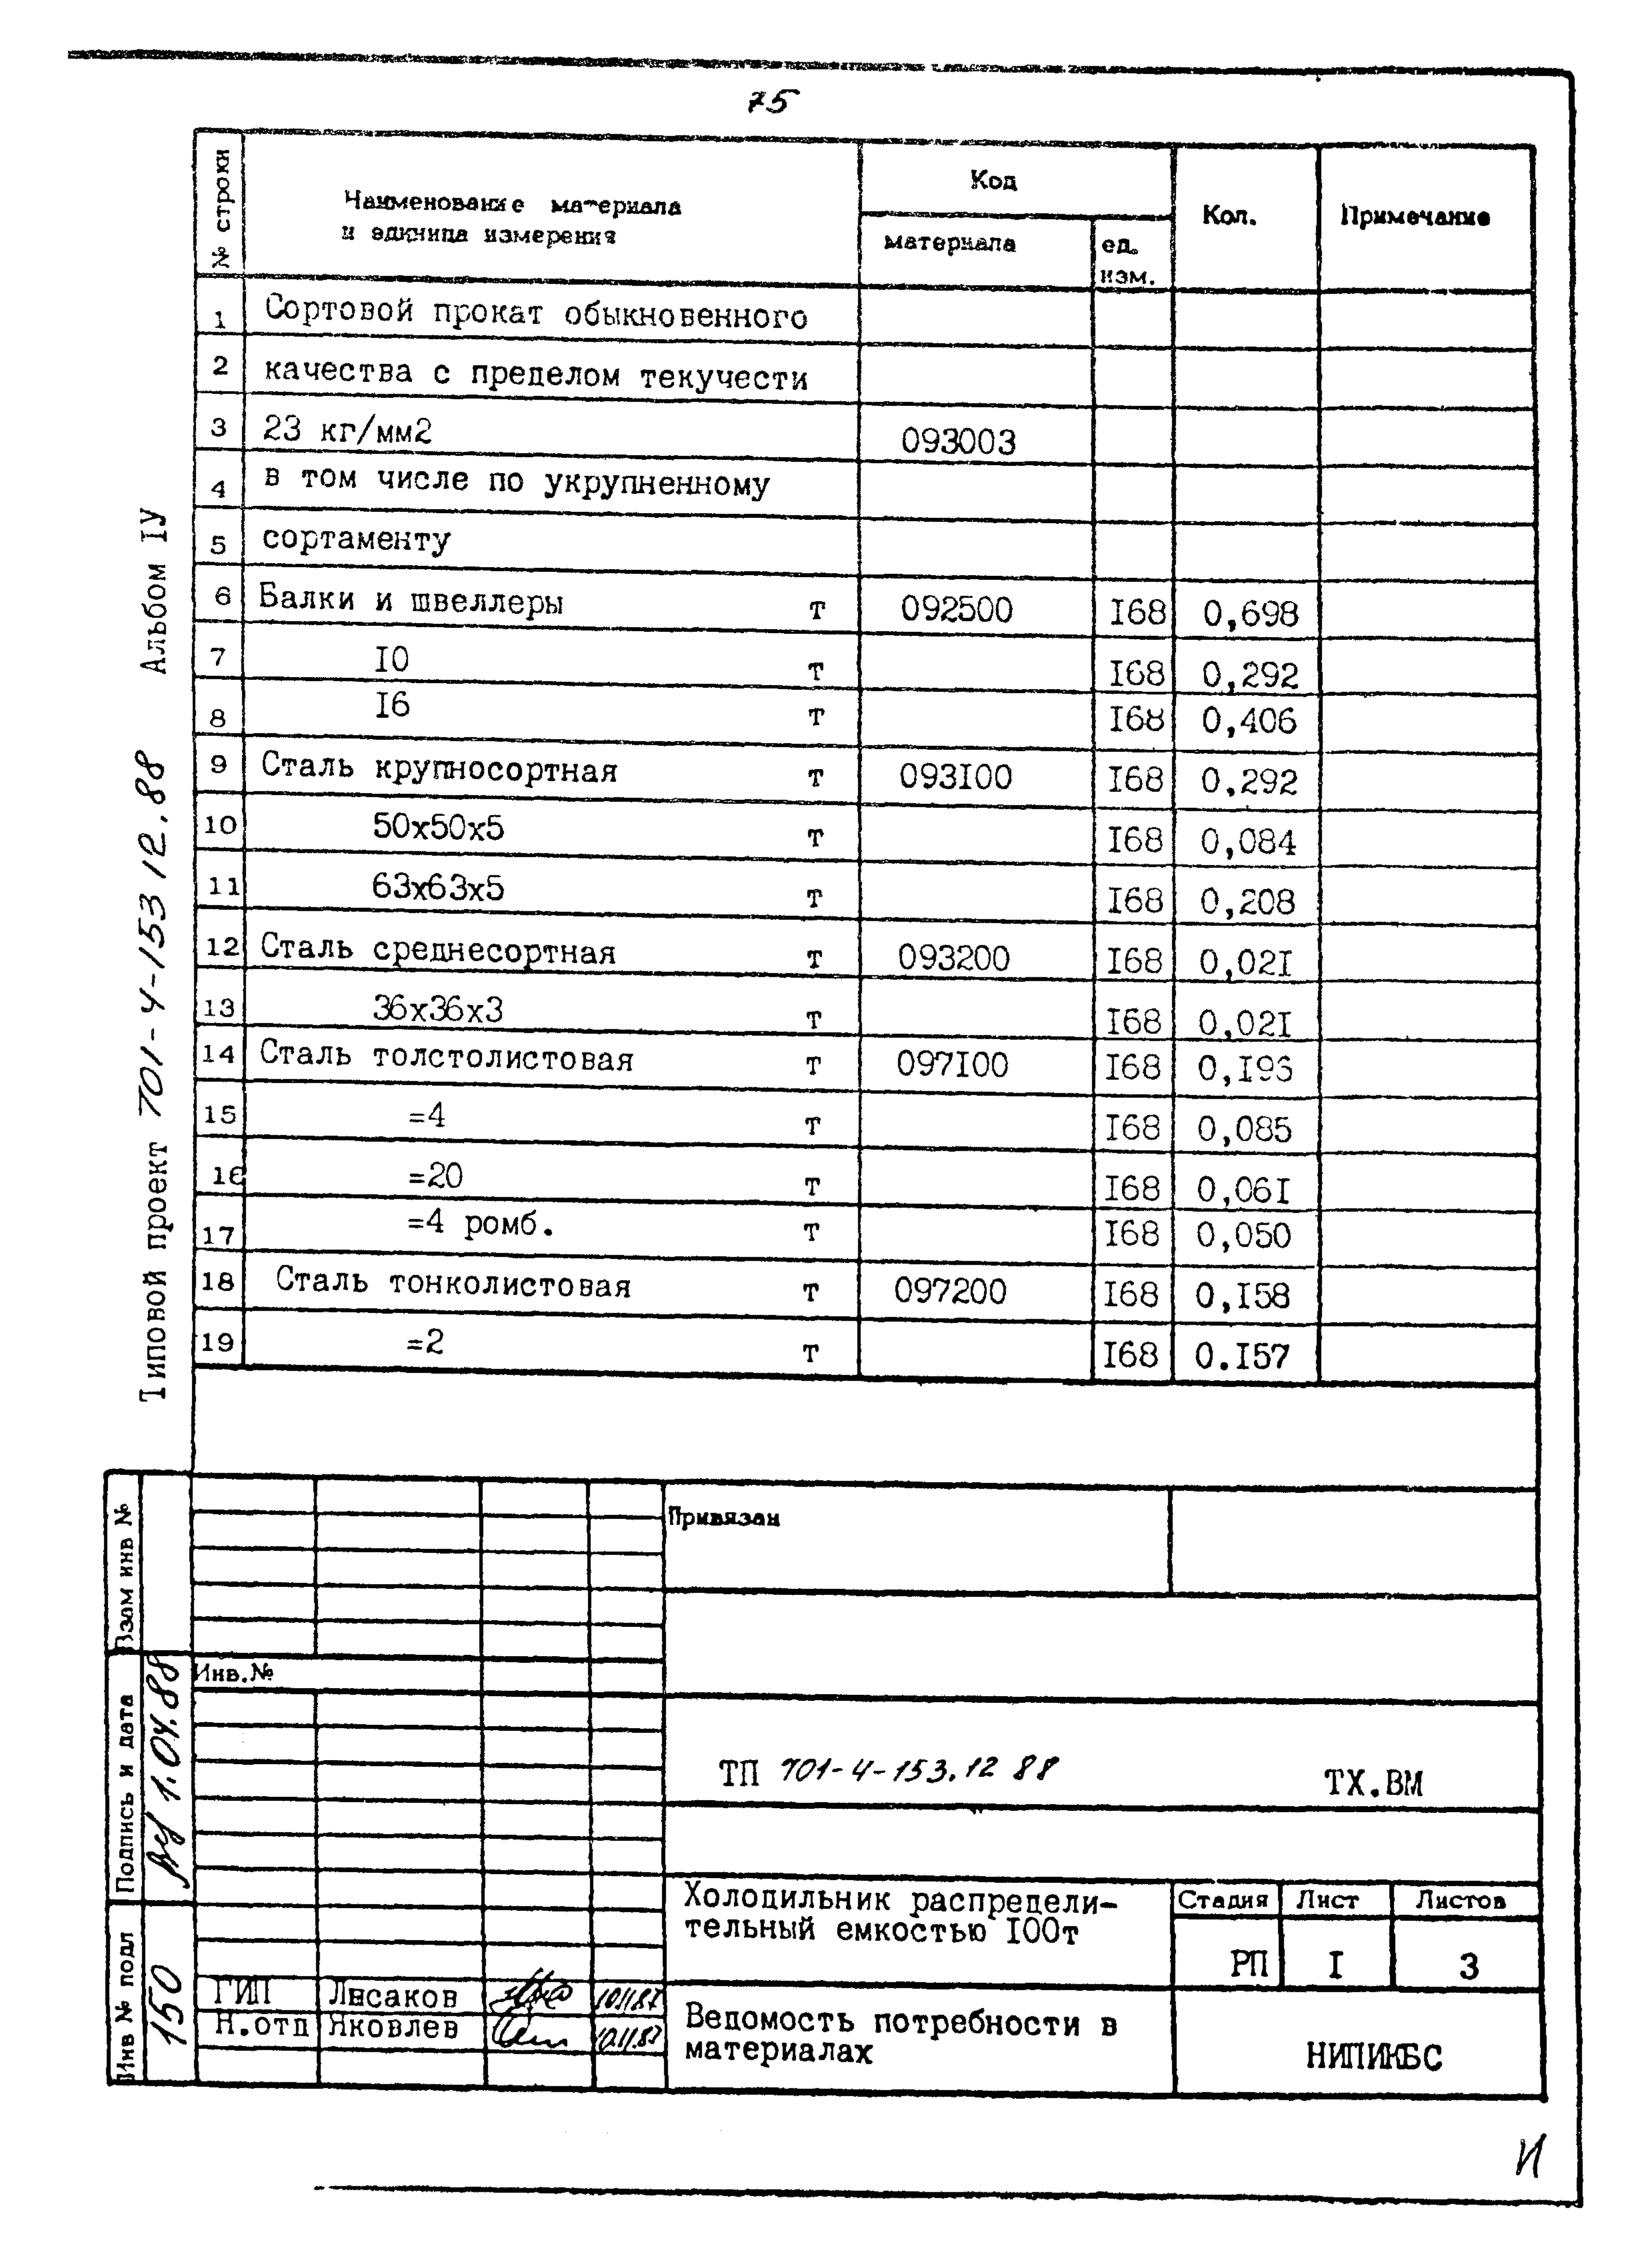 Типовой проект 701-4-153.12.88